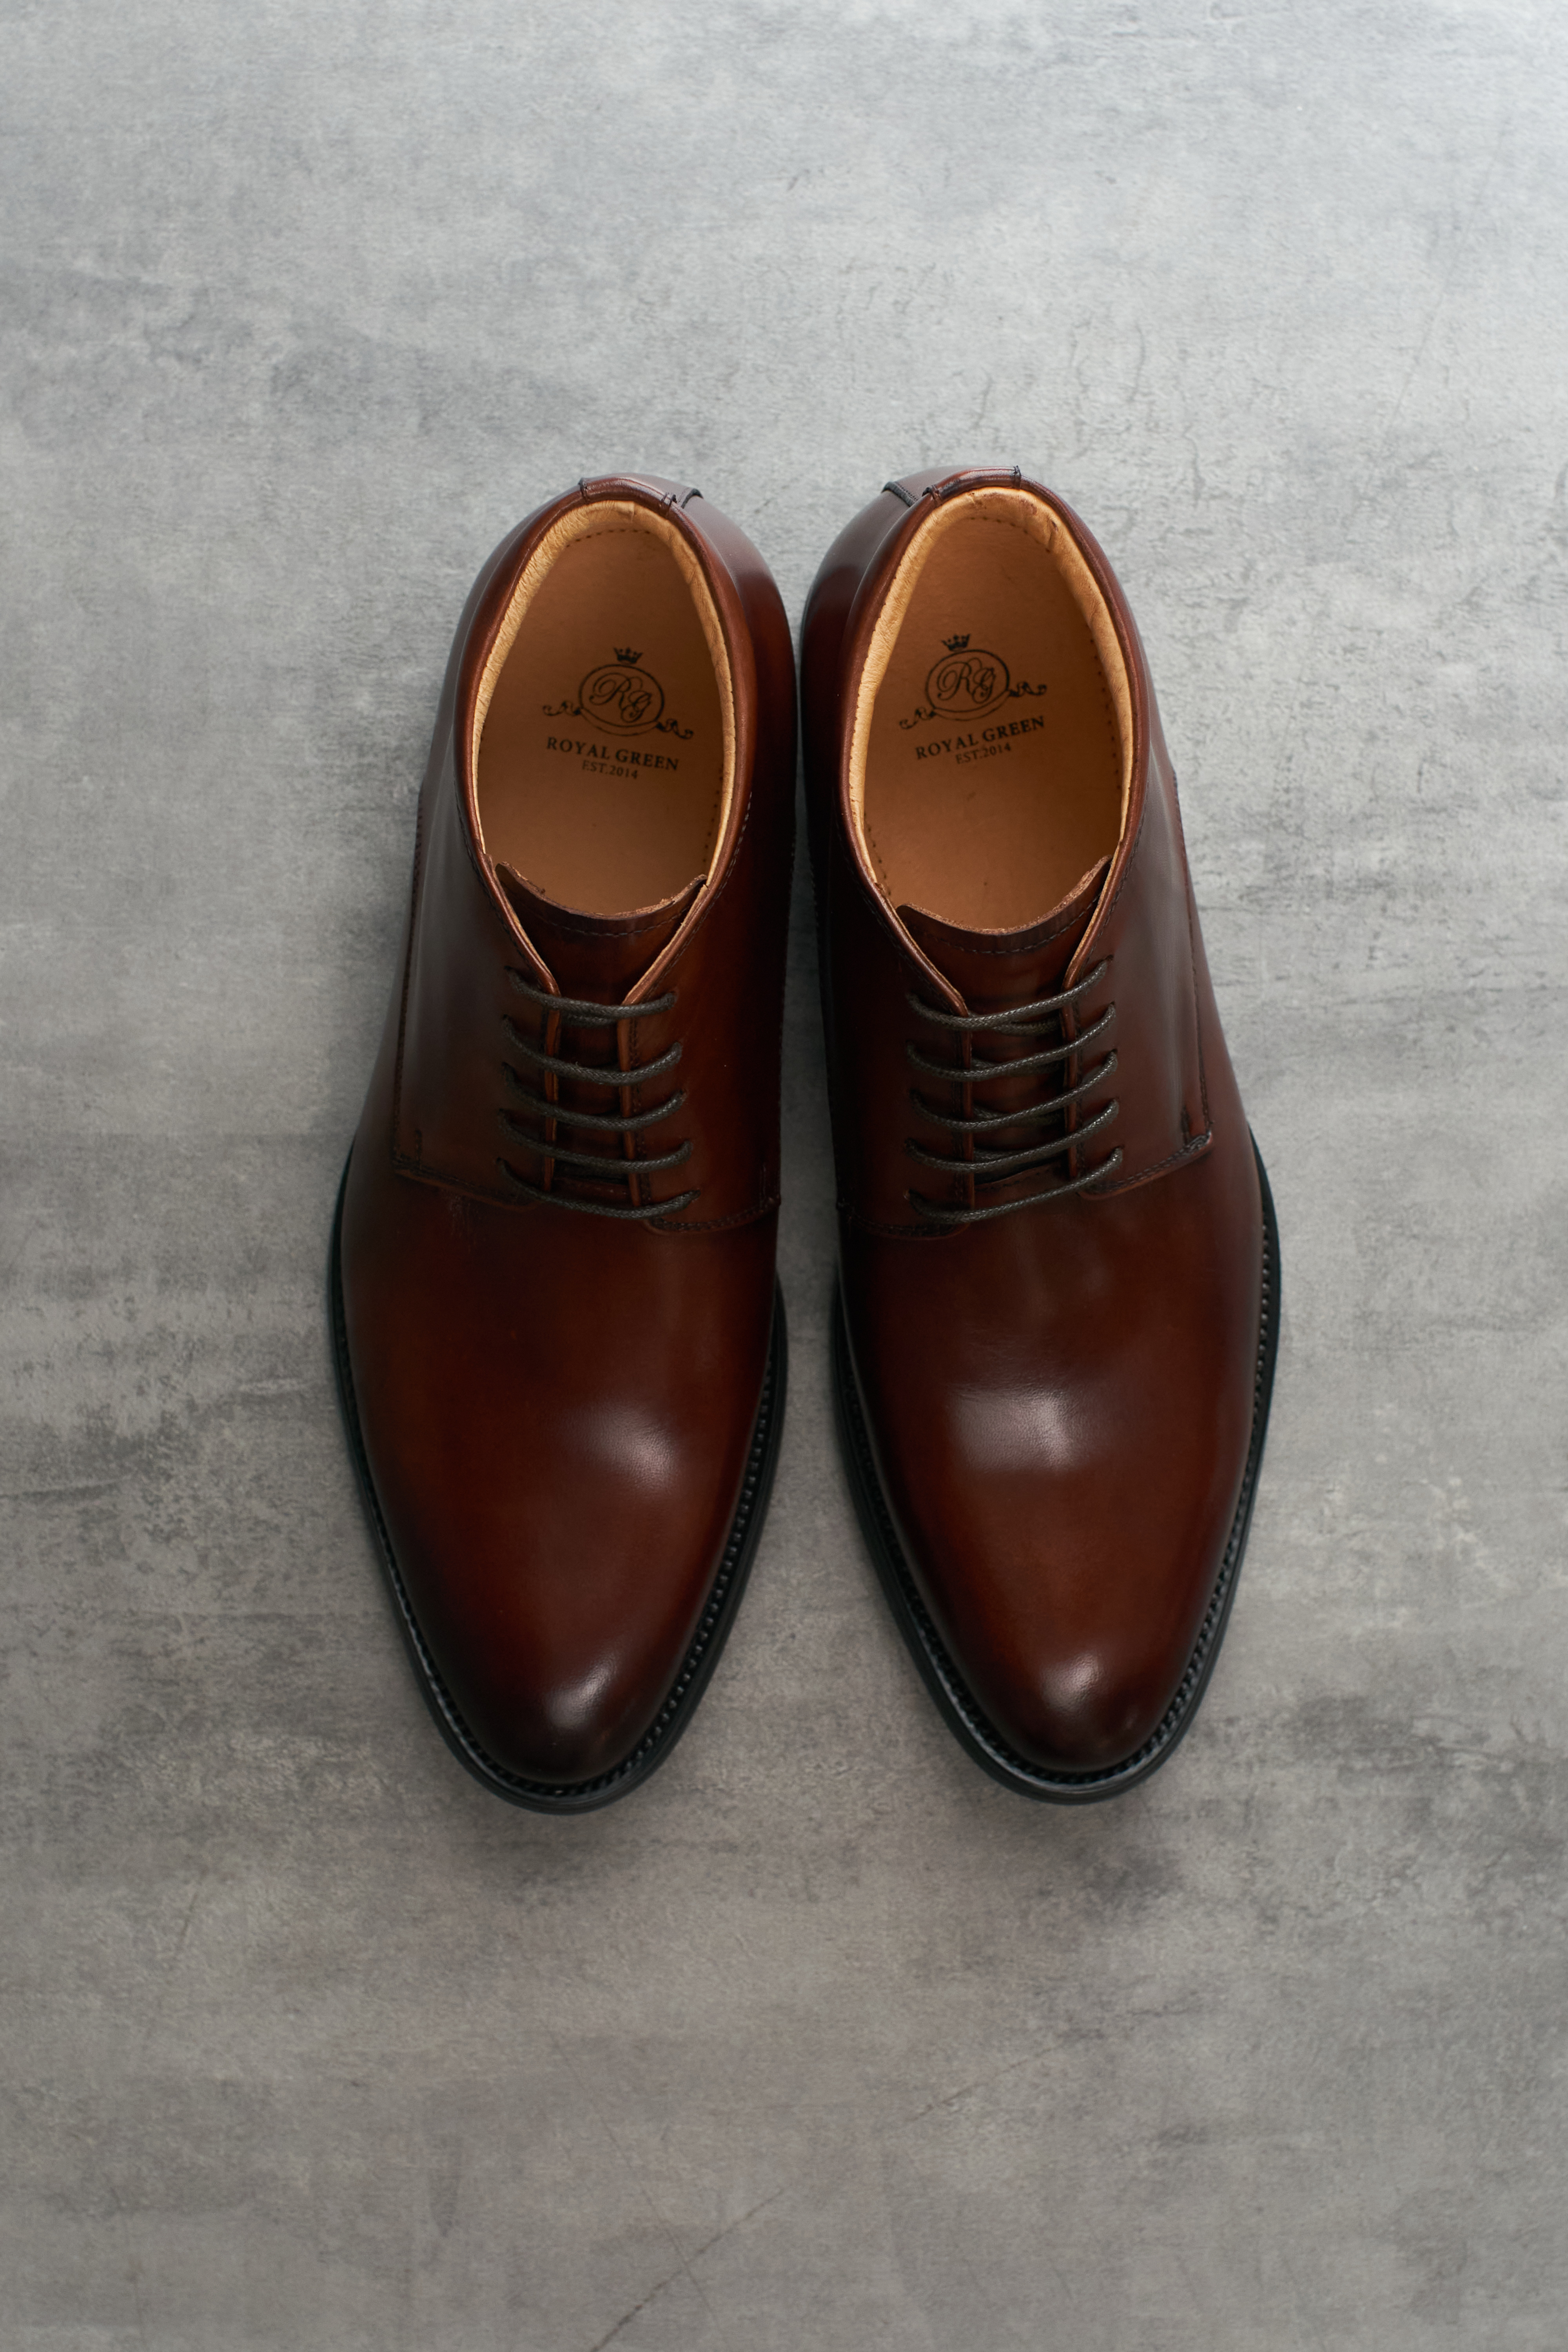 簡約素面 棕色流行靴